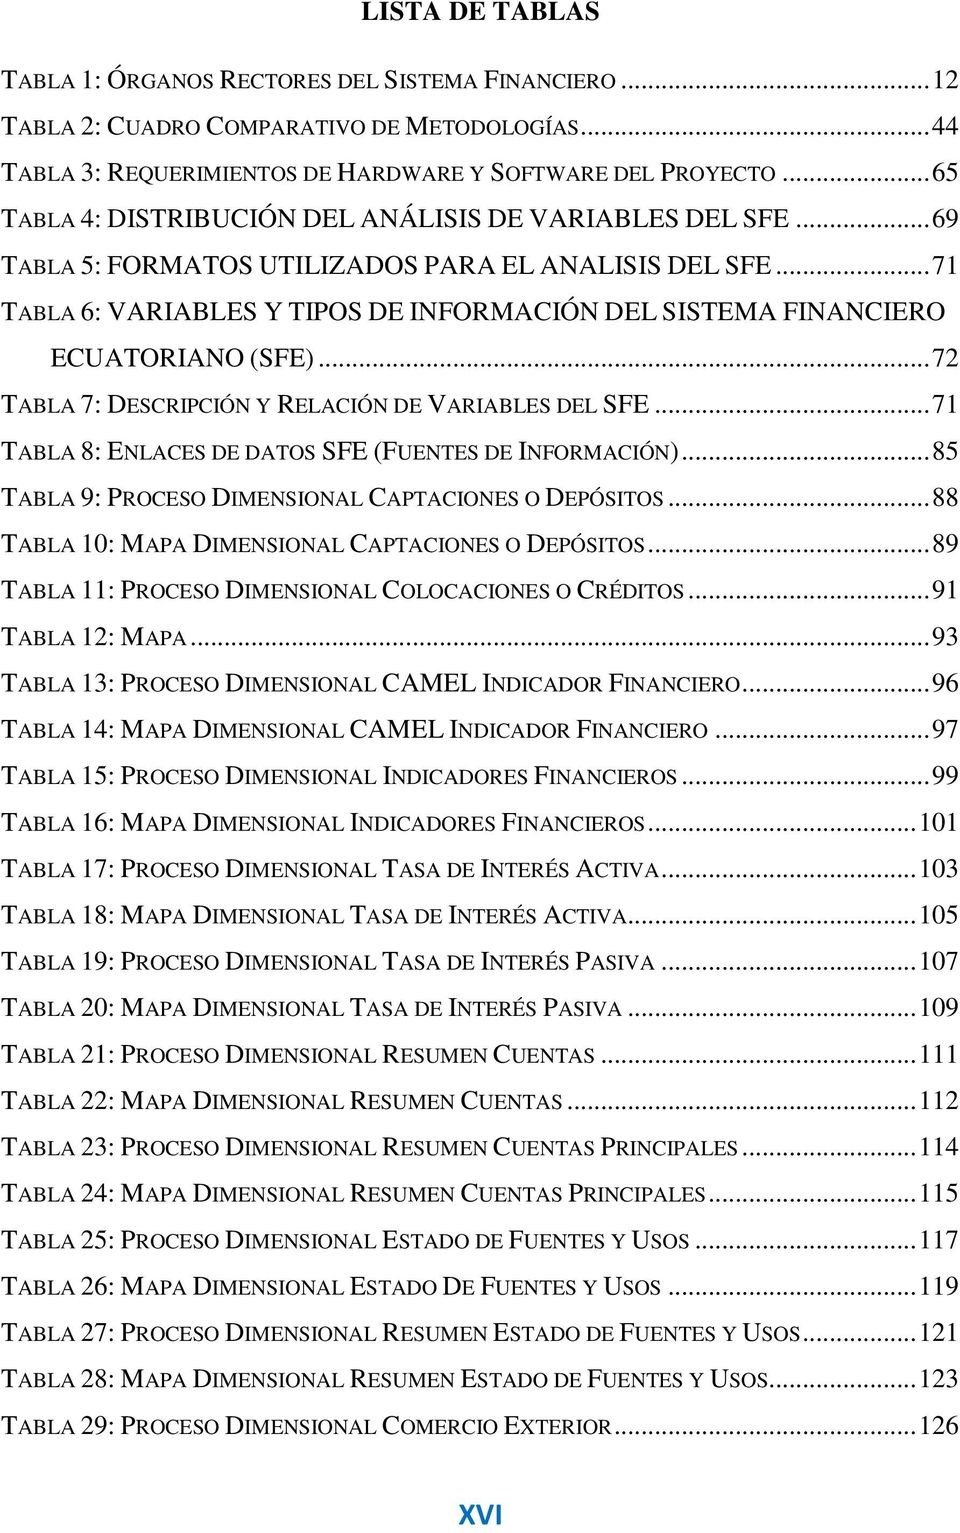 .. 71 TABLA 6: VARIABLES Y TIPOS DE INFORMACIÓN DEL SISTEMA FINANCIERO ECUATORIANO (SFE)... 72 TABLA 7: DESCRIPCIÓN Y RELACIÓN DE VARIABLES DEL SFE.